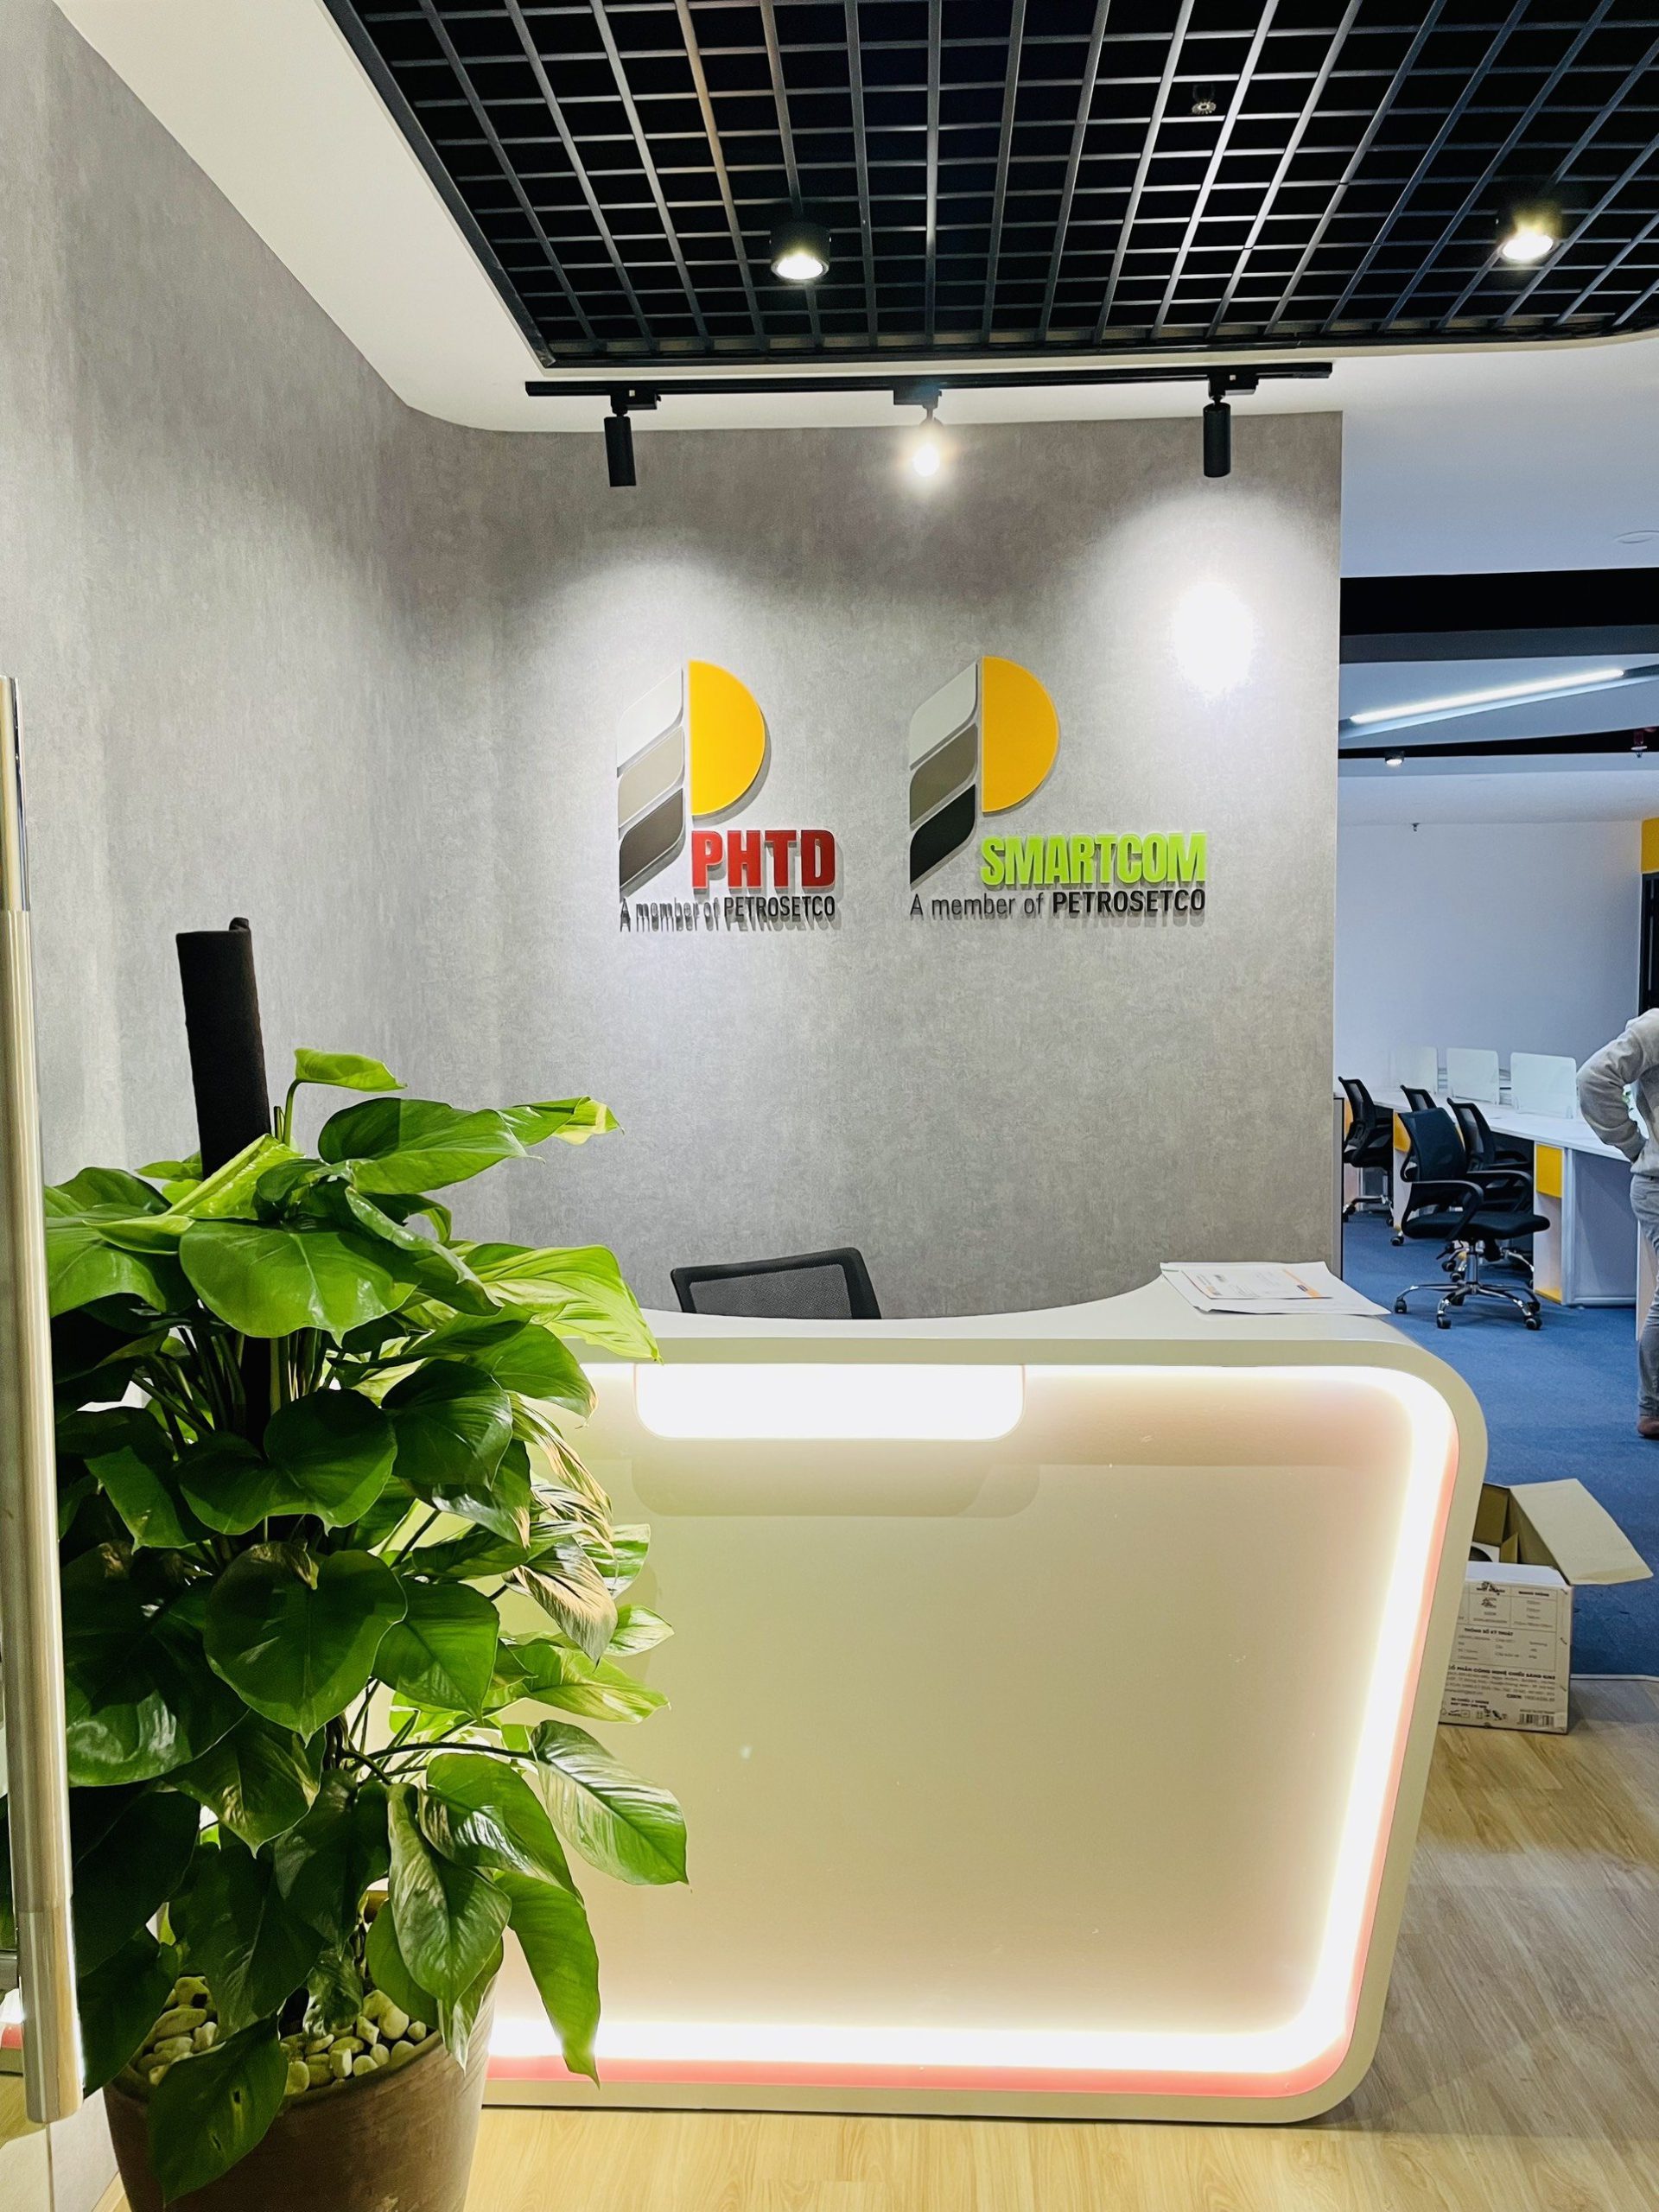 Dự án thiết kế văn phòng PHTD và Smartcom chi nhánh Hà Nội